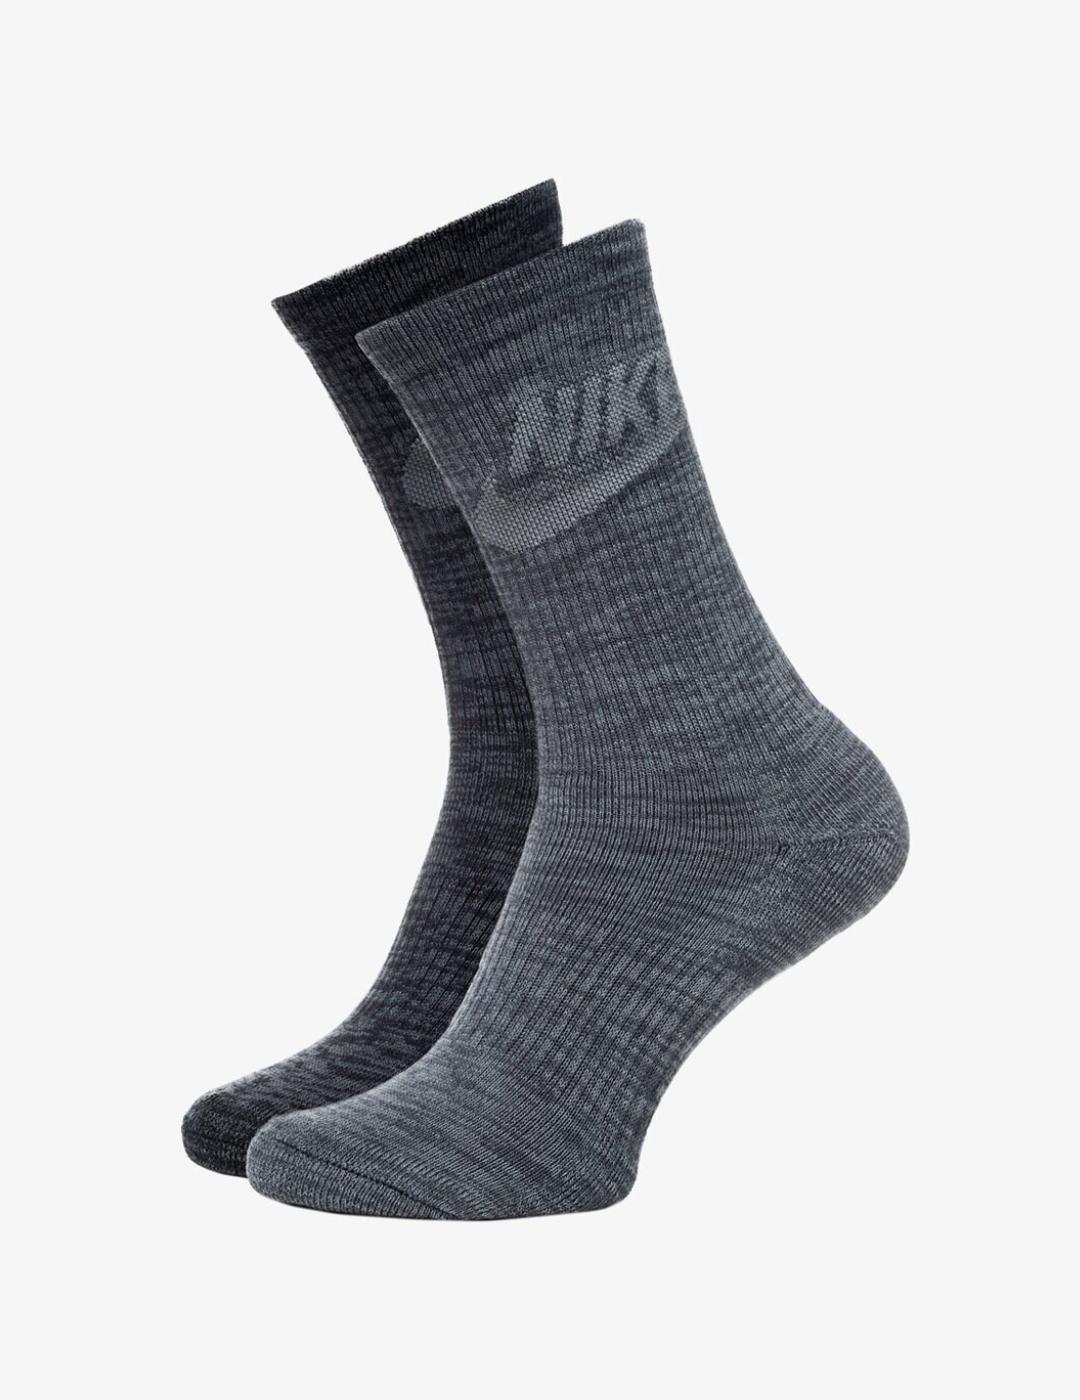 Nike altos grises